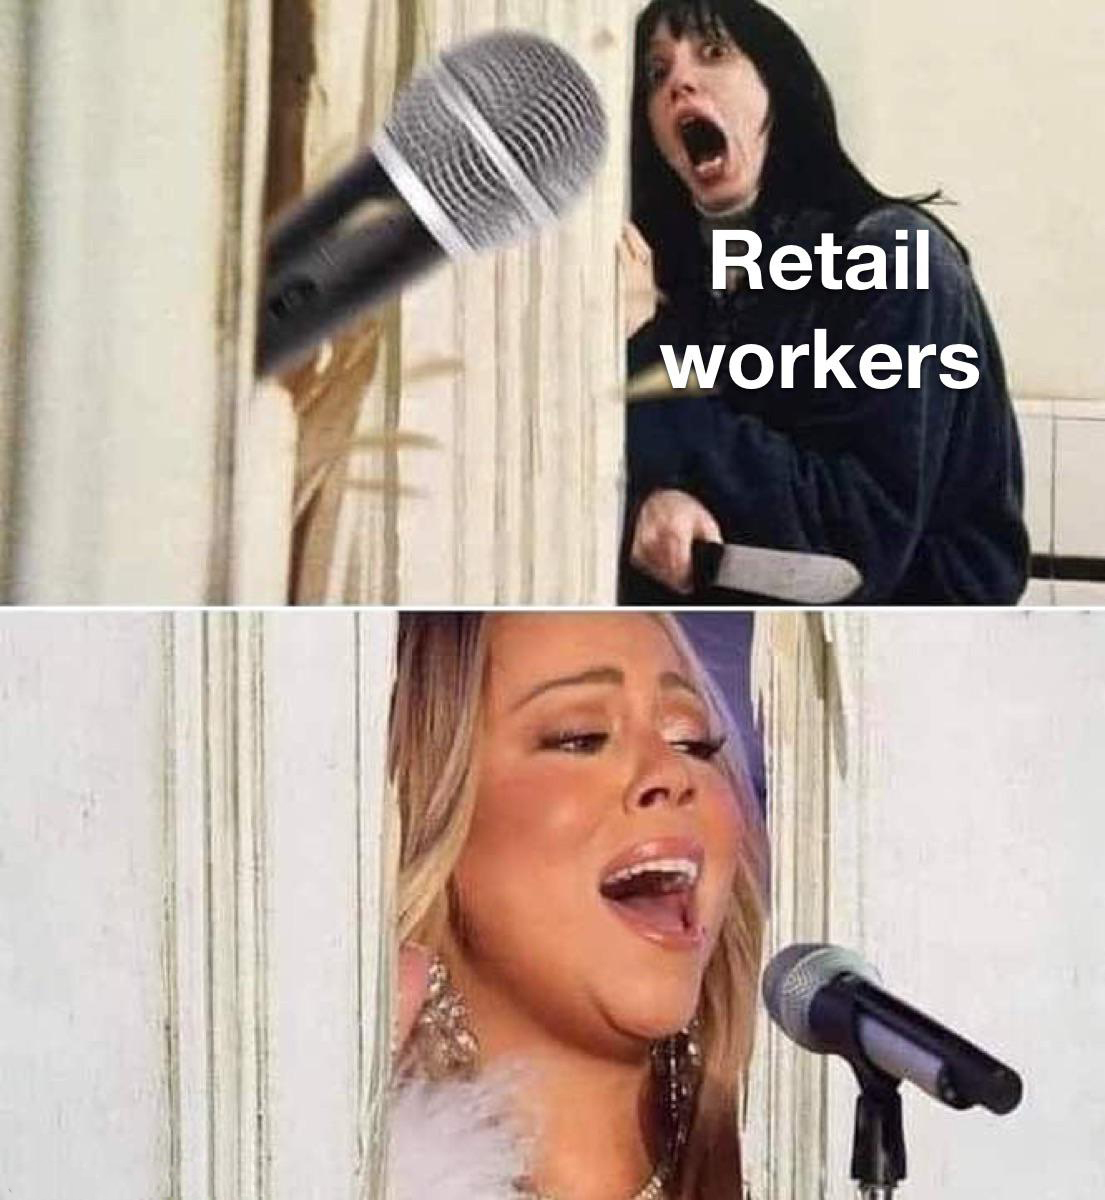 dank memes - 9gag mariah carey meme christmas - Retail workers